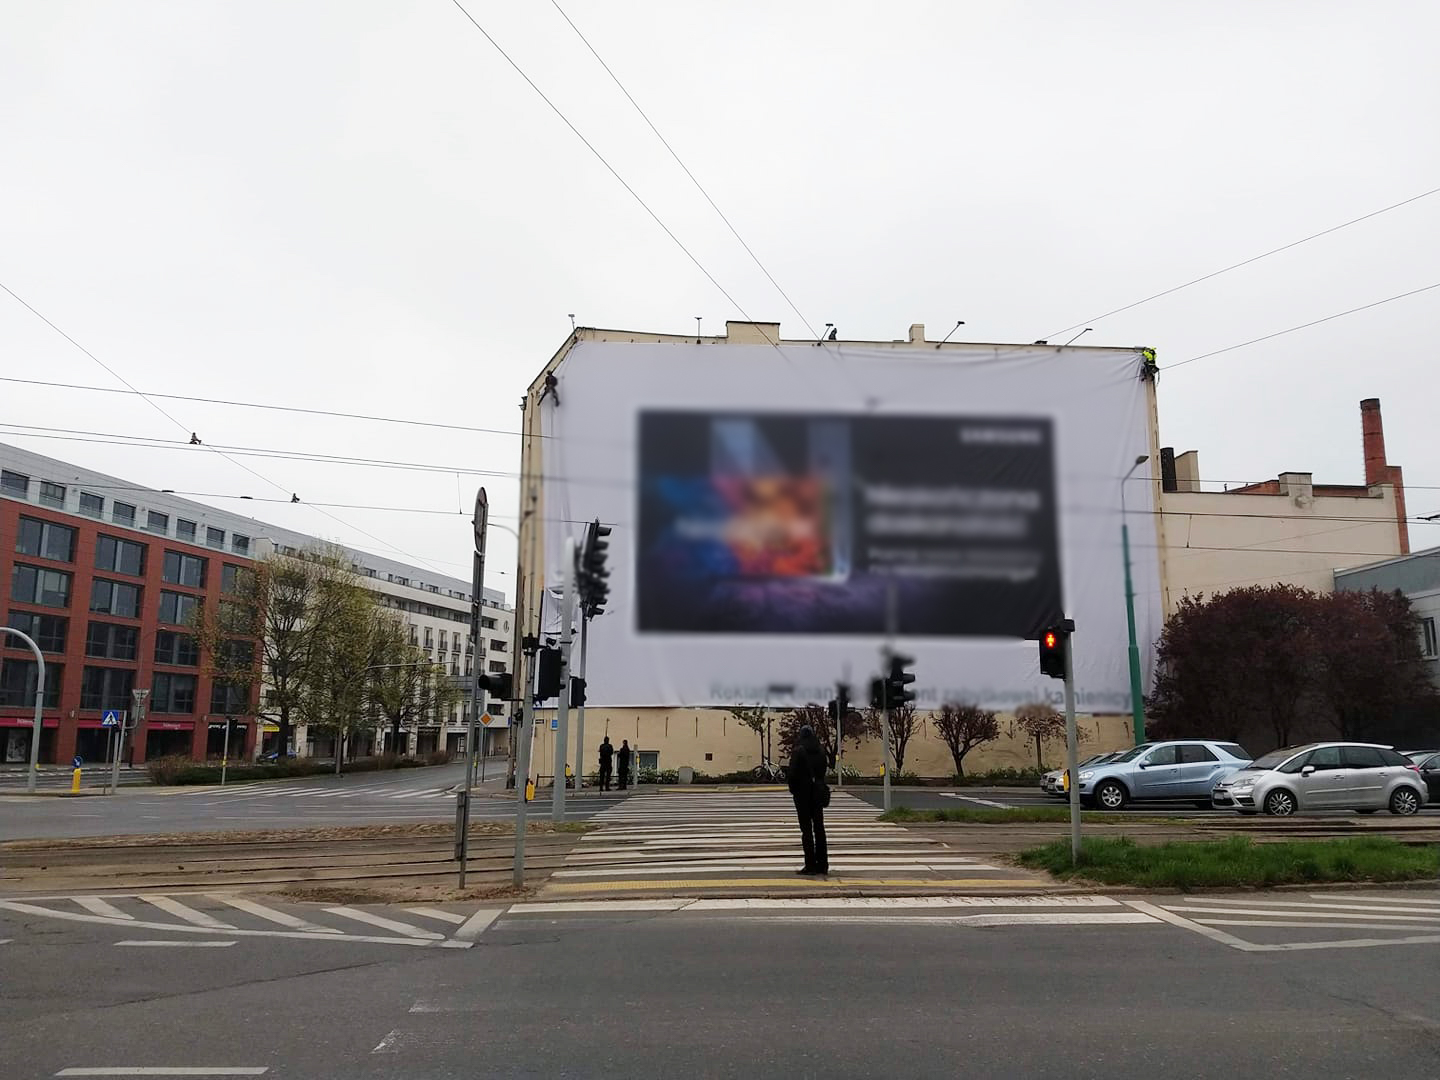 Galeria zdjęć przedstawia wielkoformatowe nieleglane reklamy zainstalowane na budynkach w centrum miasta. - grafika artykułu